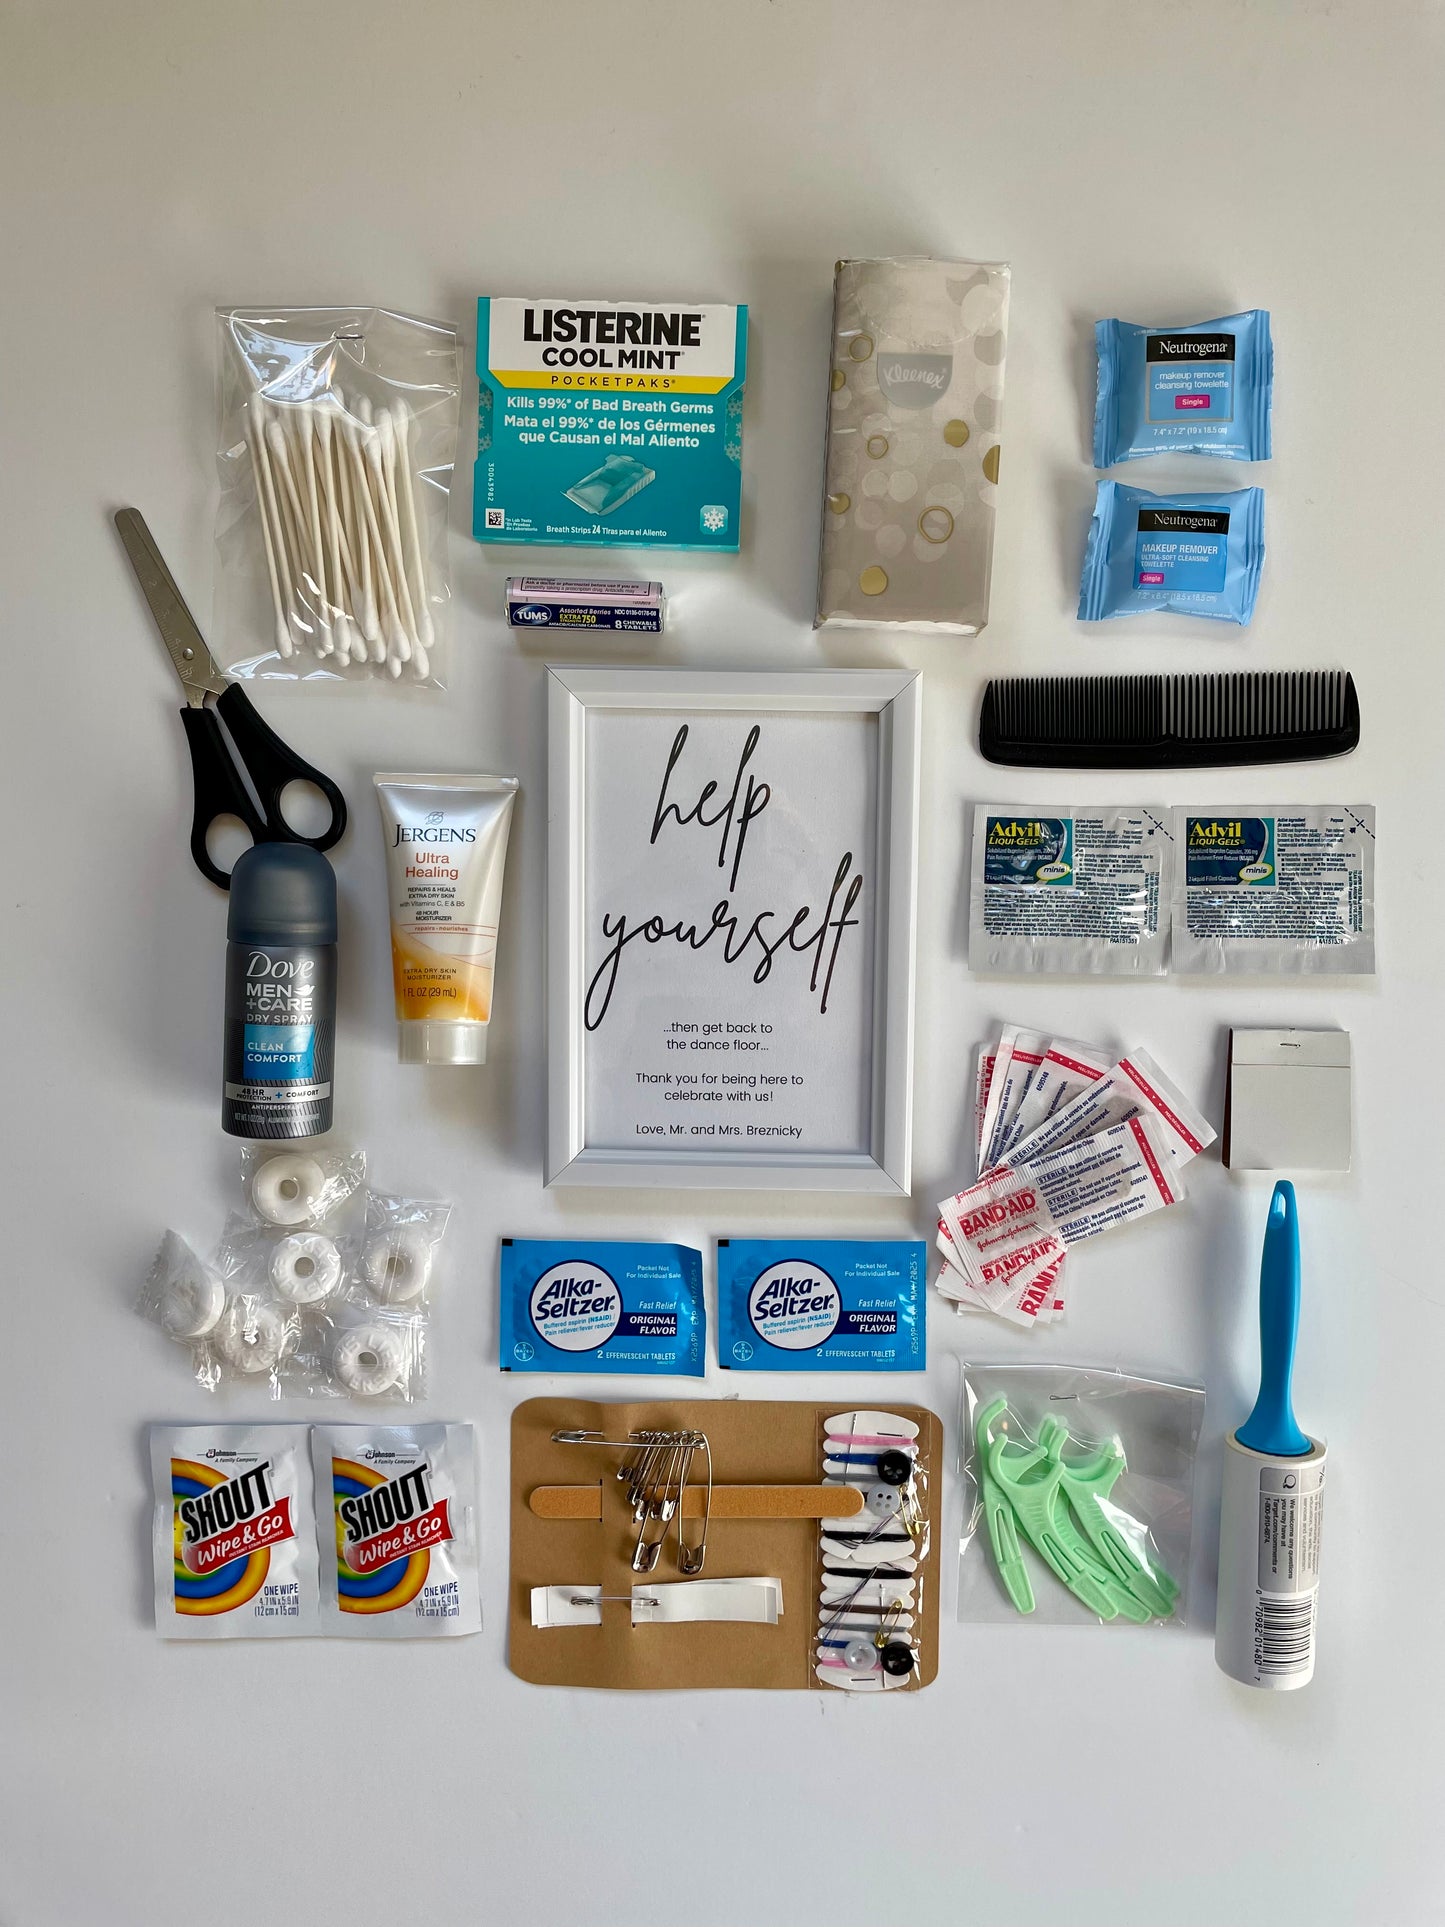 Personalized Bridal Bathroom Emergency Kit - Wedding day Essentials